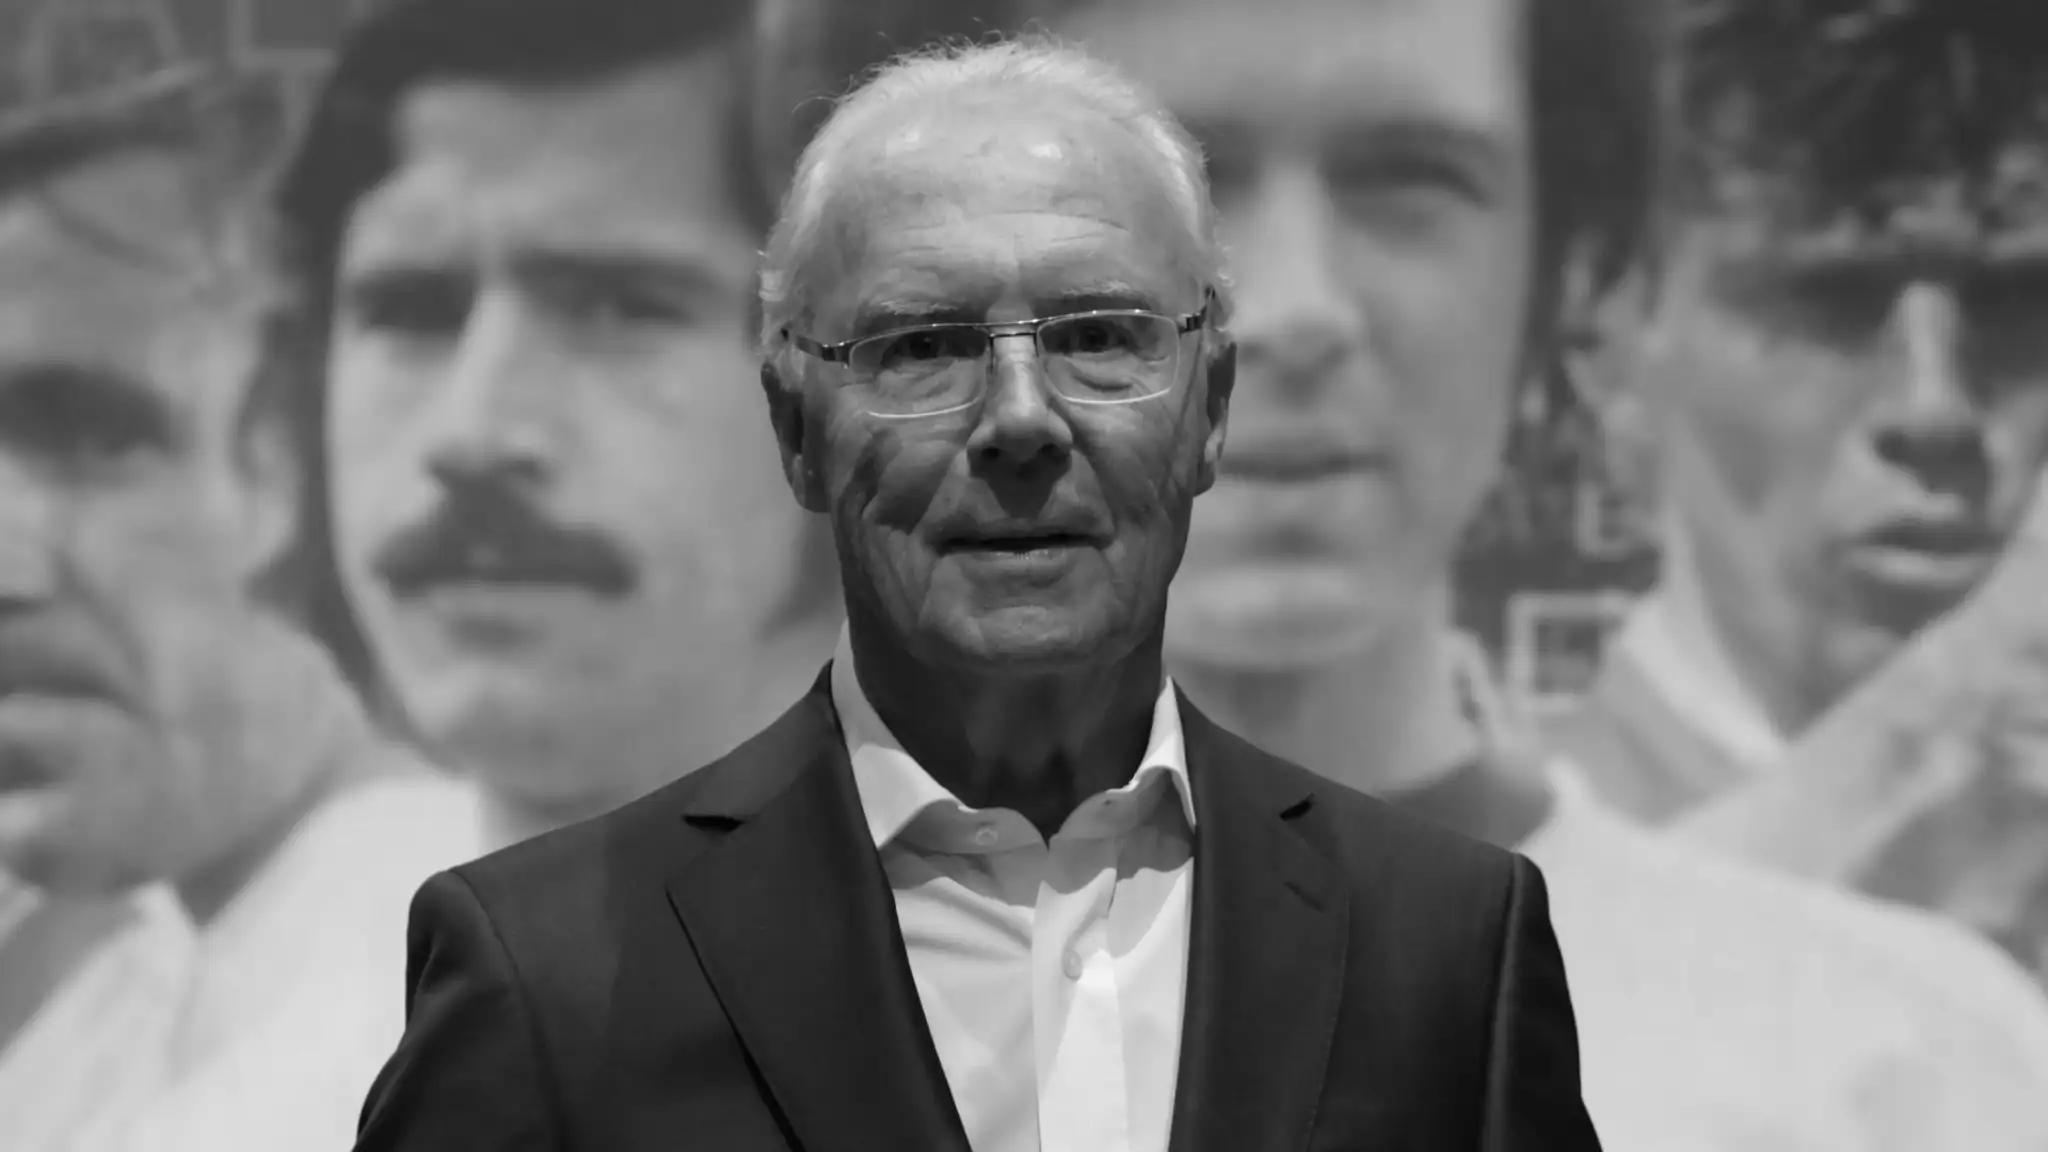 Franz Beckenbauer. (SinPo.id/Getty Images)